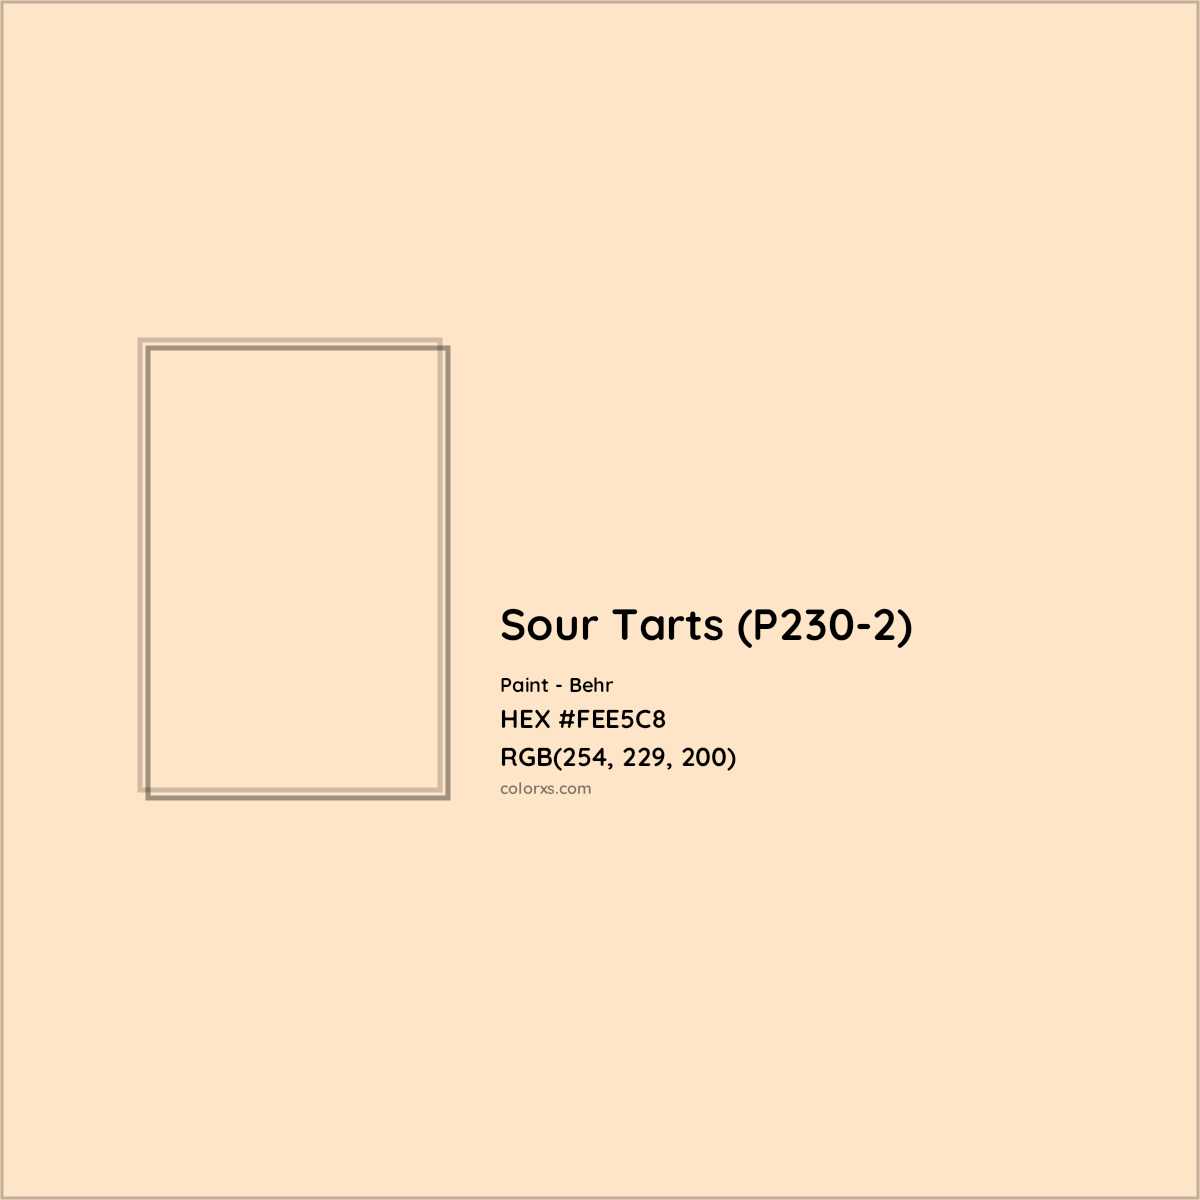 HEX #FEE5C8 Sour Tarts (P230-2) Paint Behr - Color Code